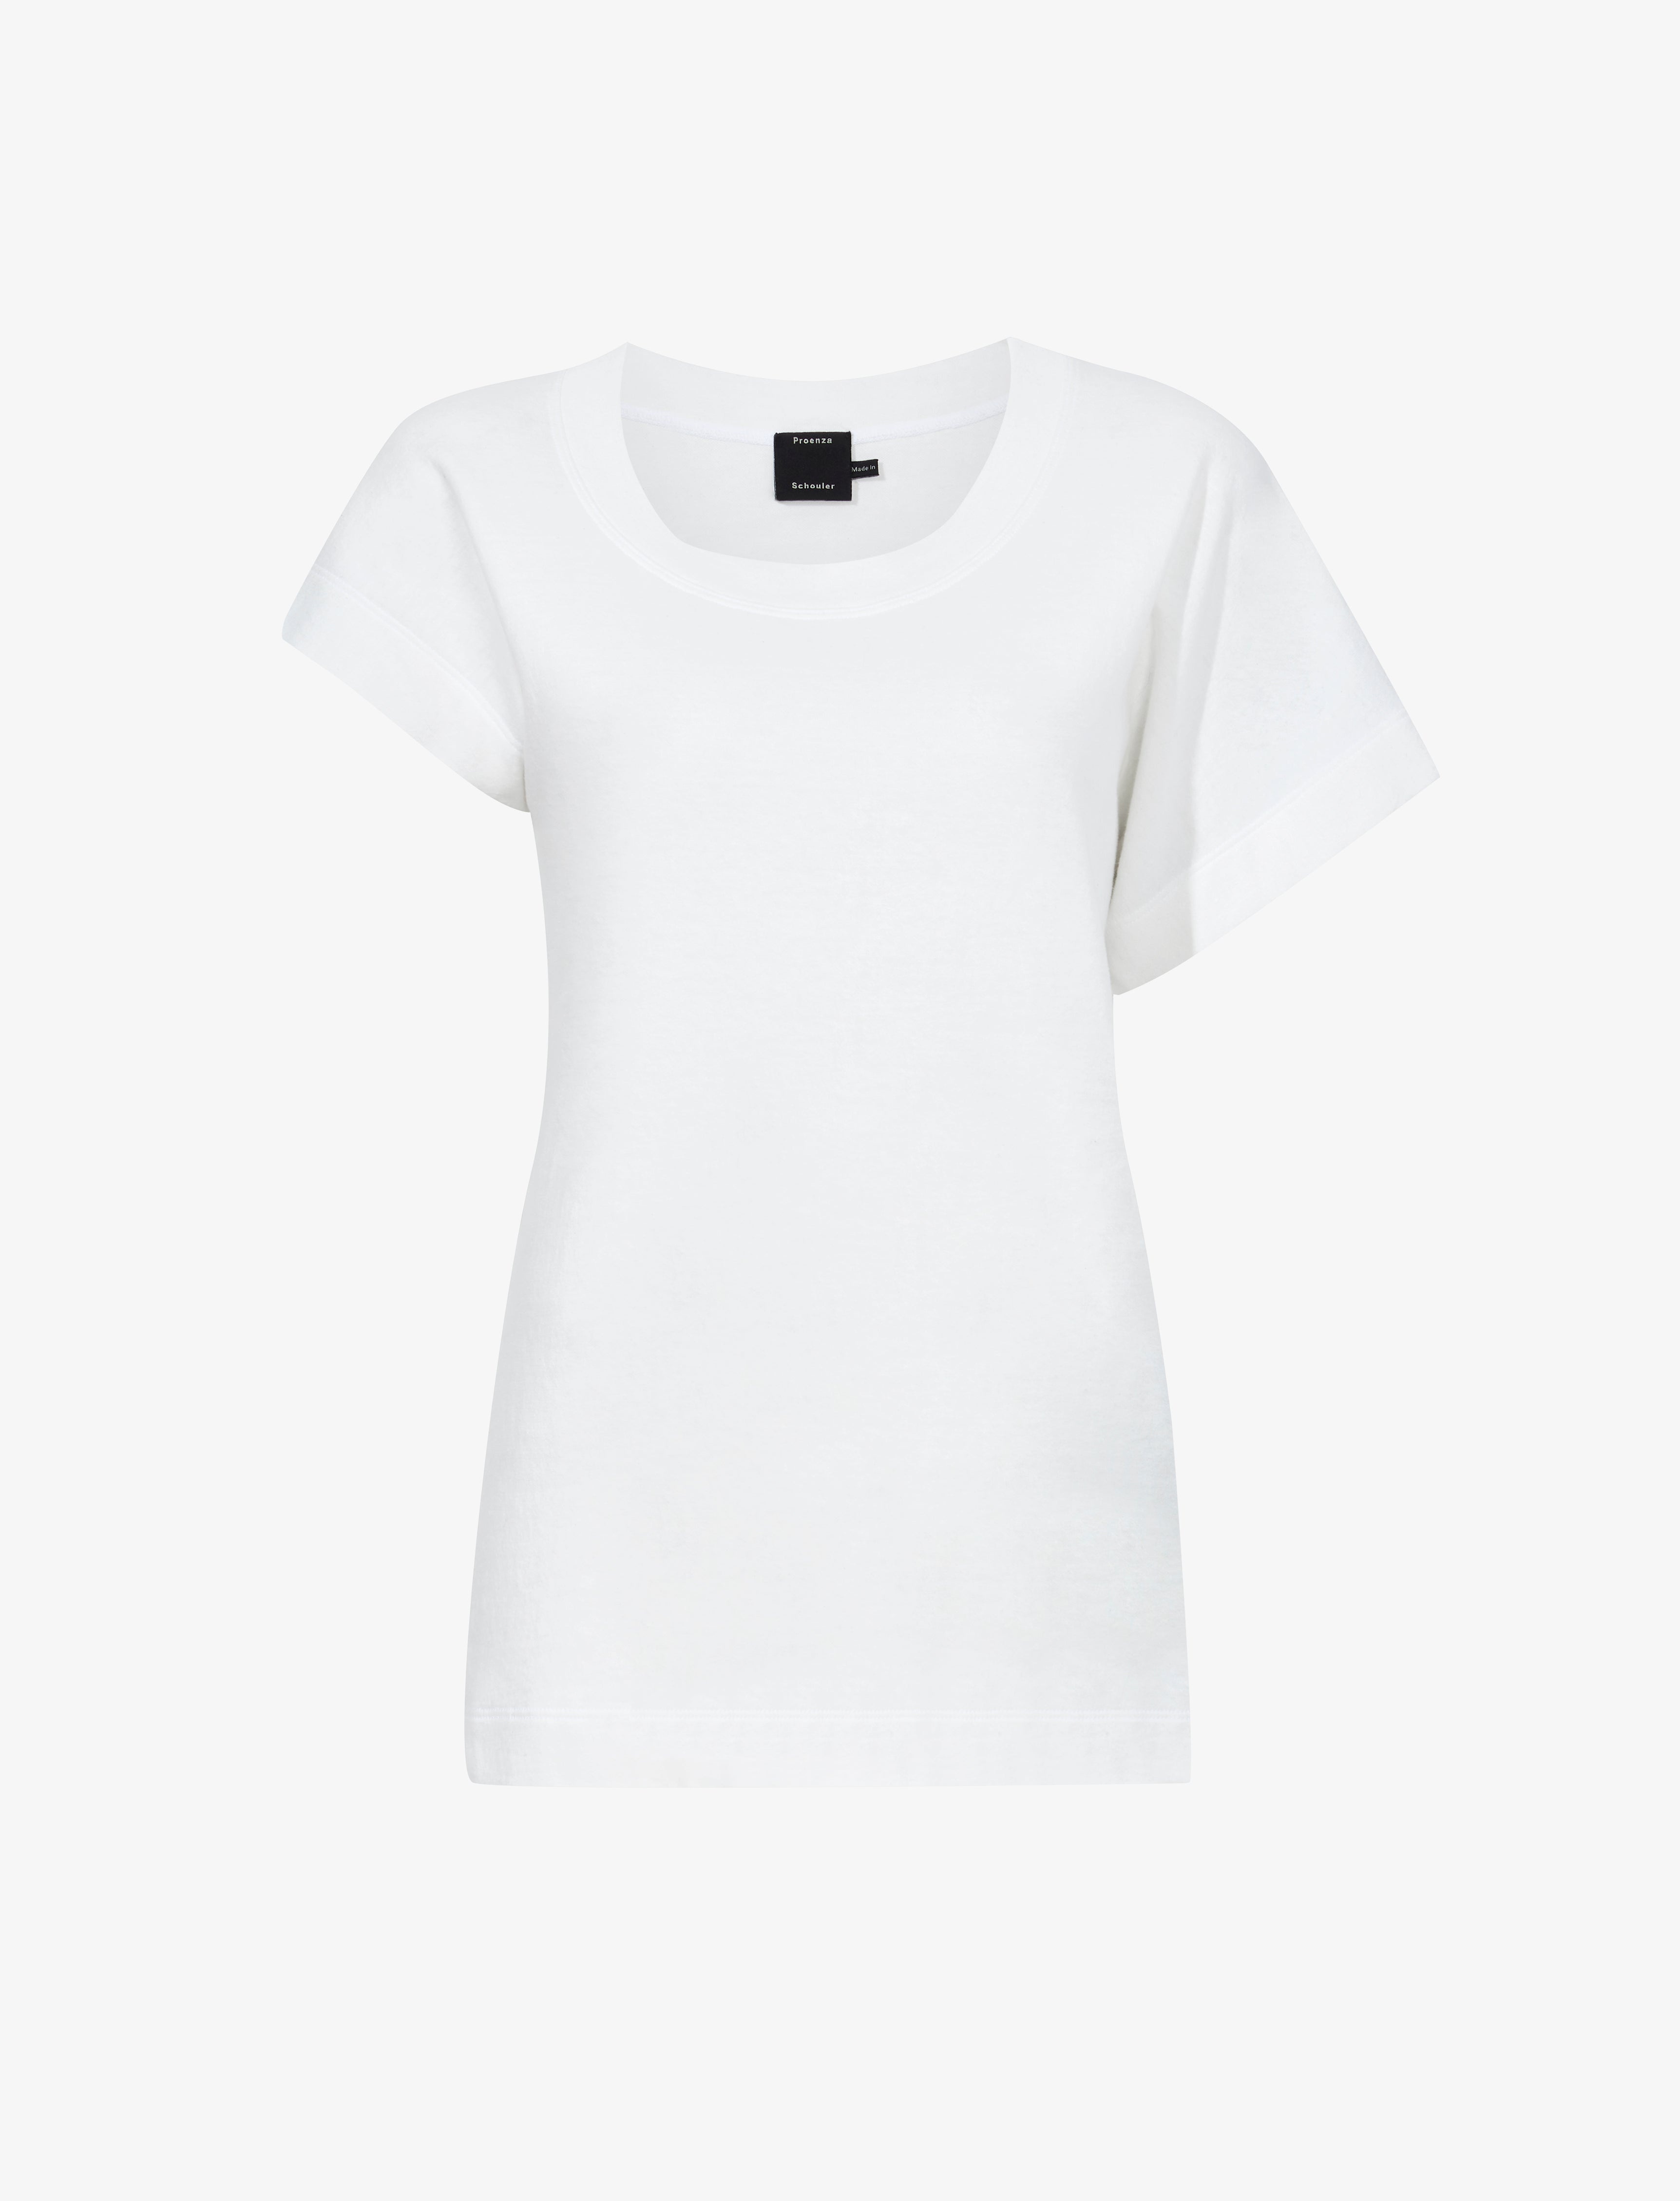 Hopper T-Shirt in Cotton Jersey - 1